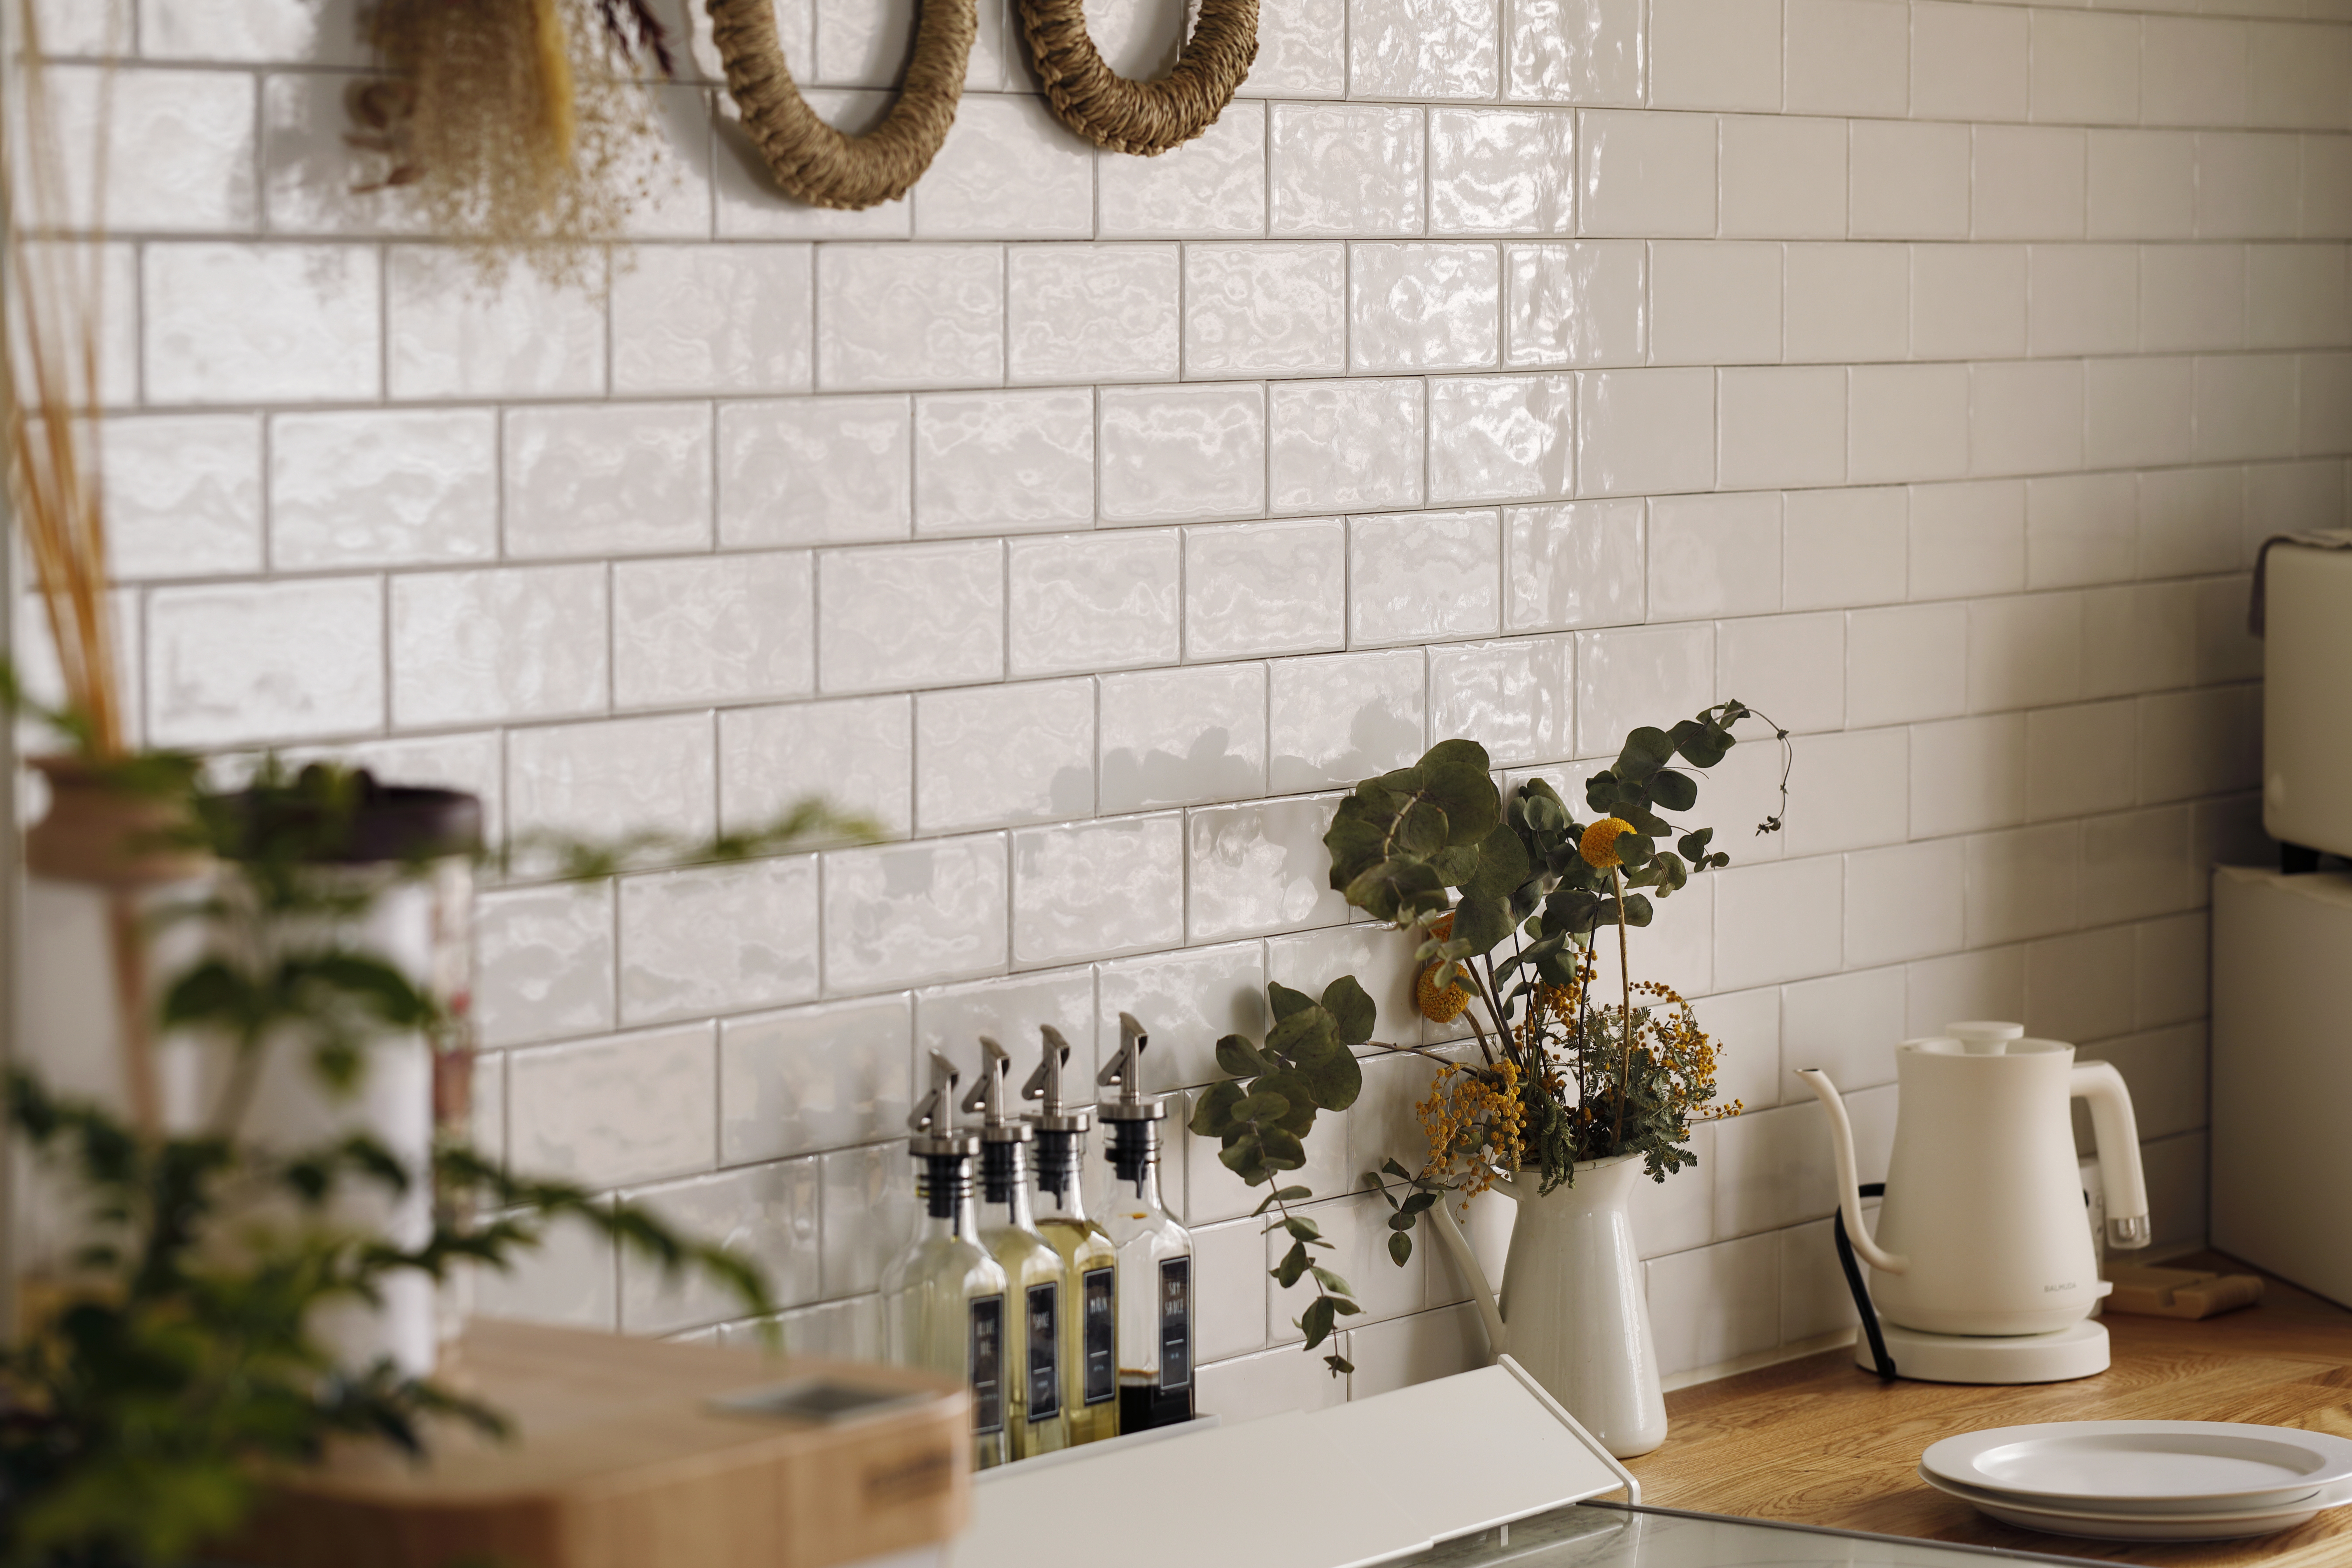 おしゃれな壁のキッチンリノベ デザイン実例を紹介 リノベーションのshuken Re マンション 住宅 中古物件をリフォームやリノベで住みやすくデザインし施工します